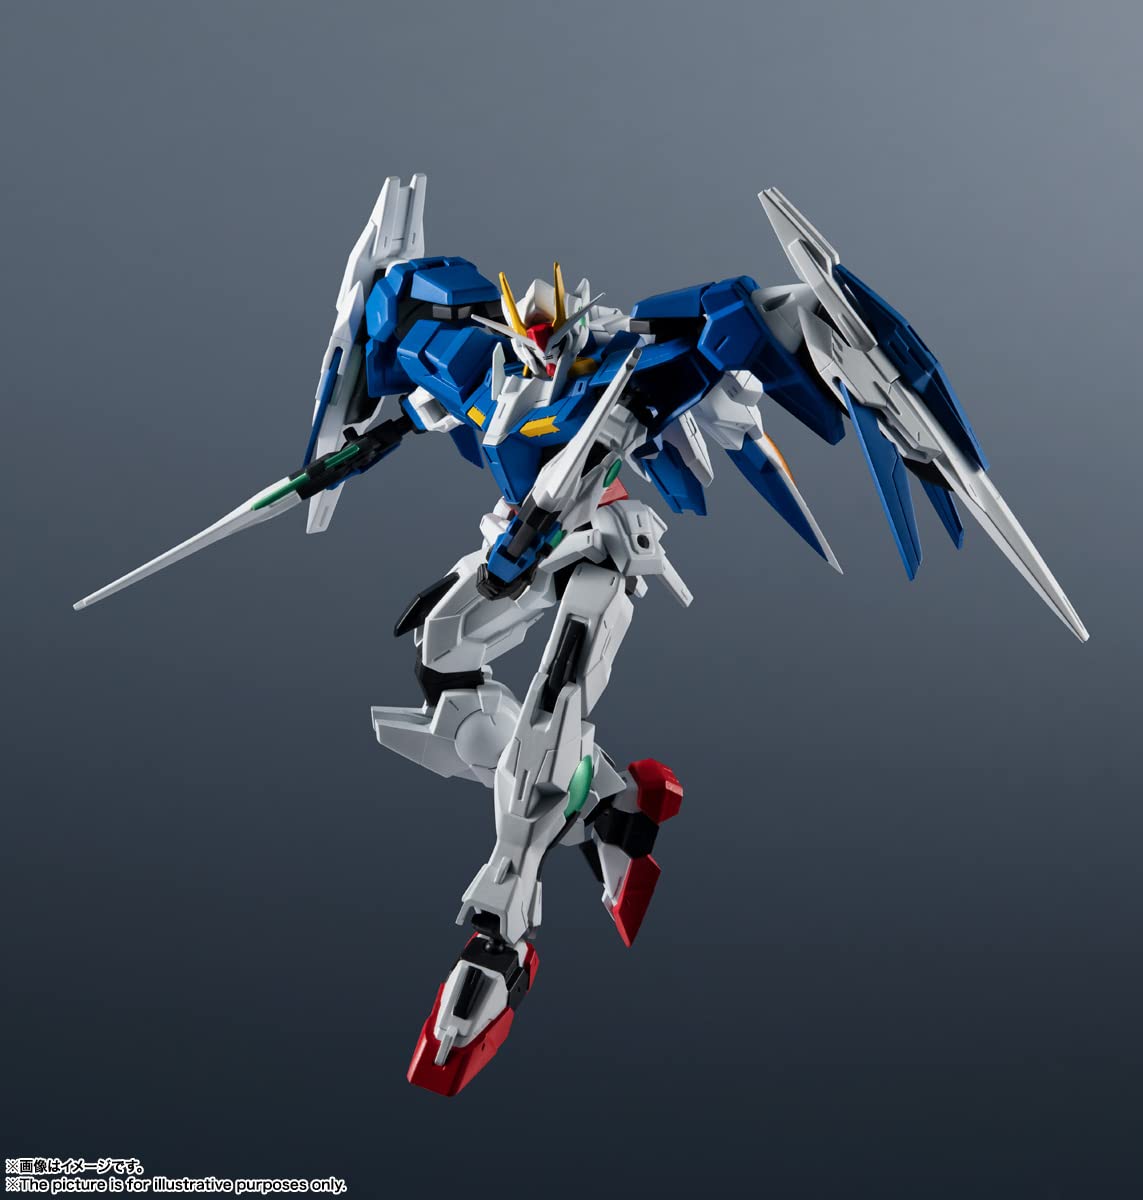 TAMASHII NATIONS - Mobile Suit Gundam - GN-0000 & GNR-010 00 Raiser - Bandai Spirits Gundam Universe Action Figure